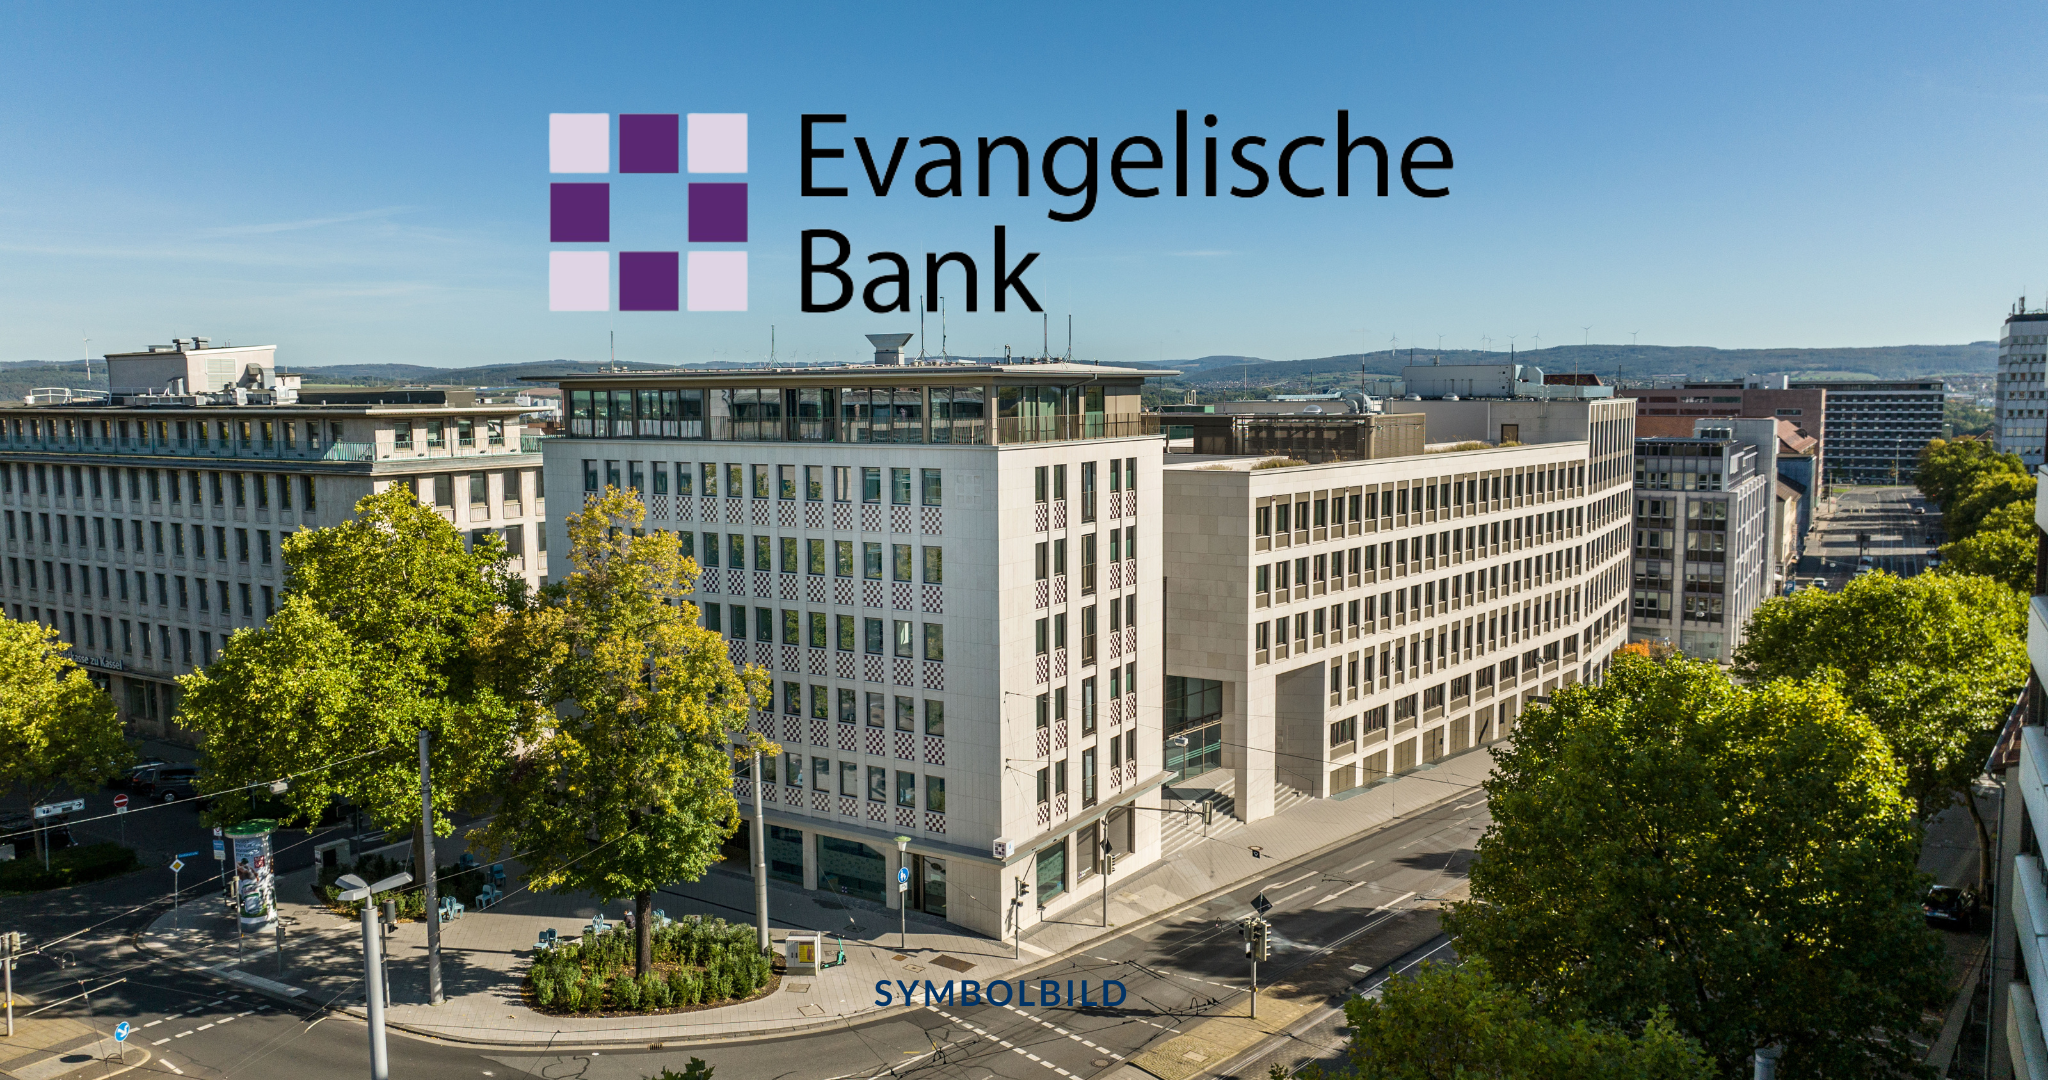 Zu sehen ist ein Foto des Gebäudes der EB in Kassel, darüber ihr Logo. Aufsichtsrat Symbolbild